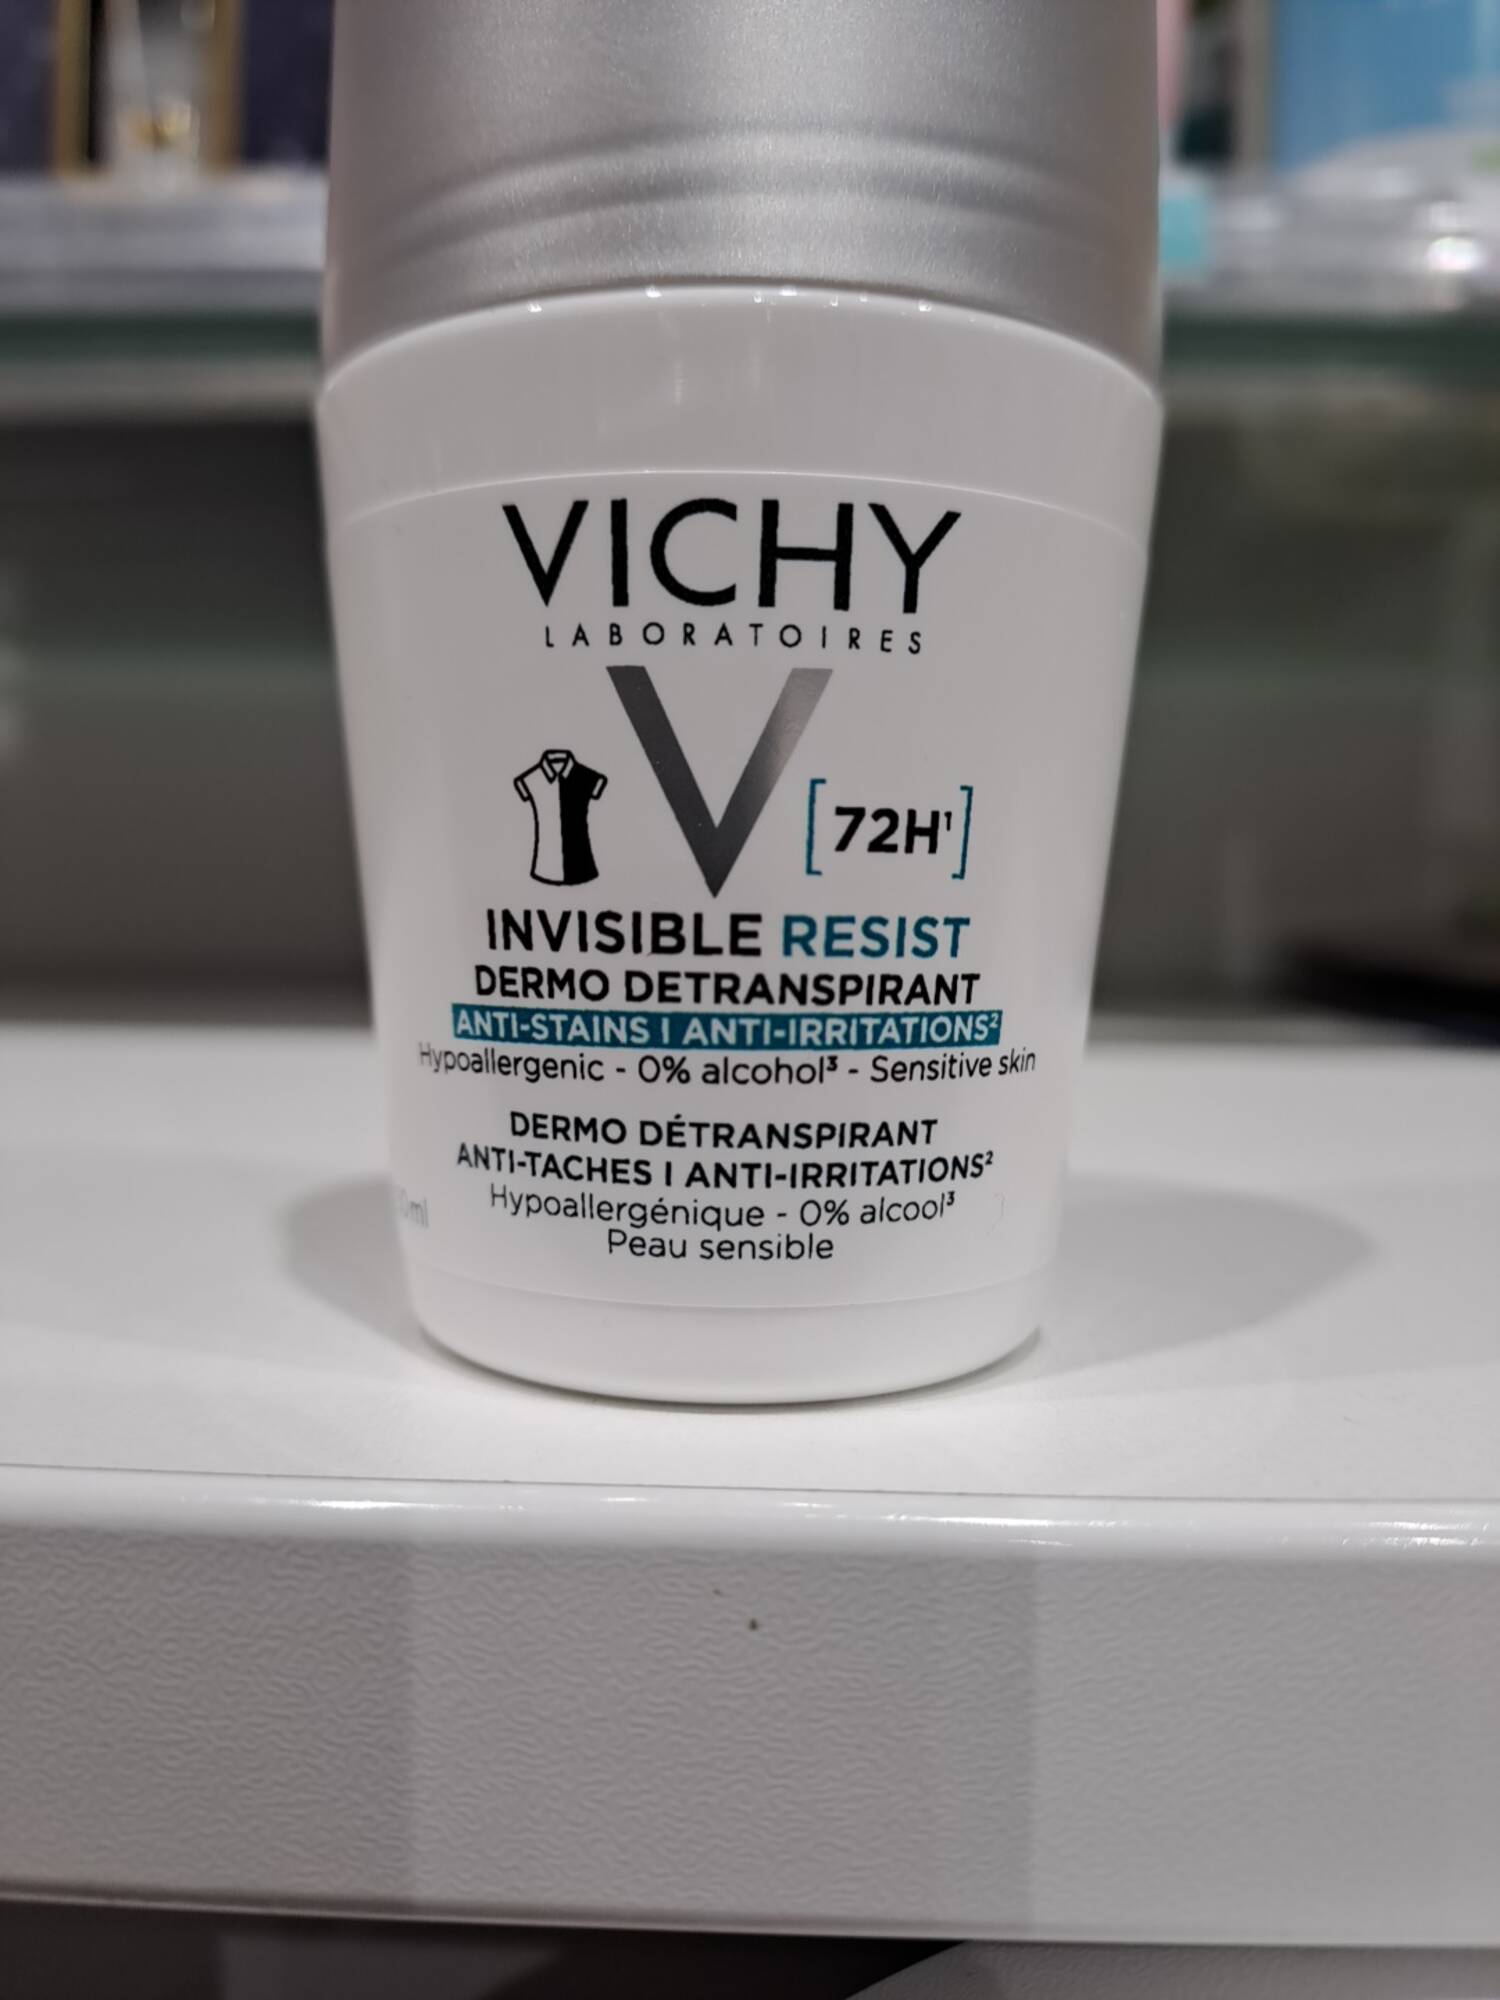 VICHY - Invisible resist  - Dermo detranspirant 72h